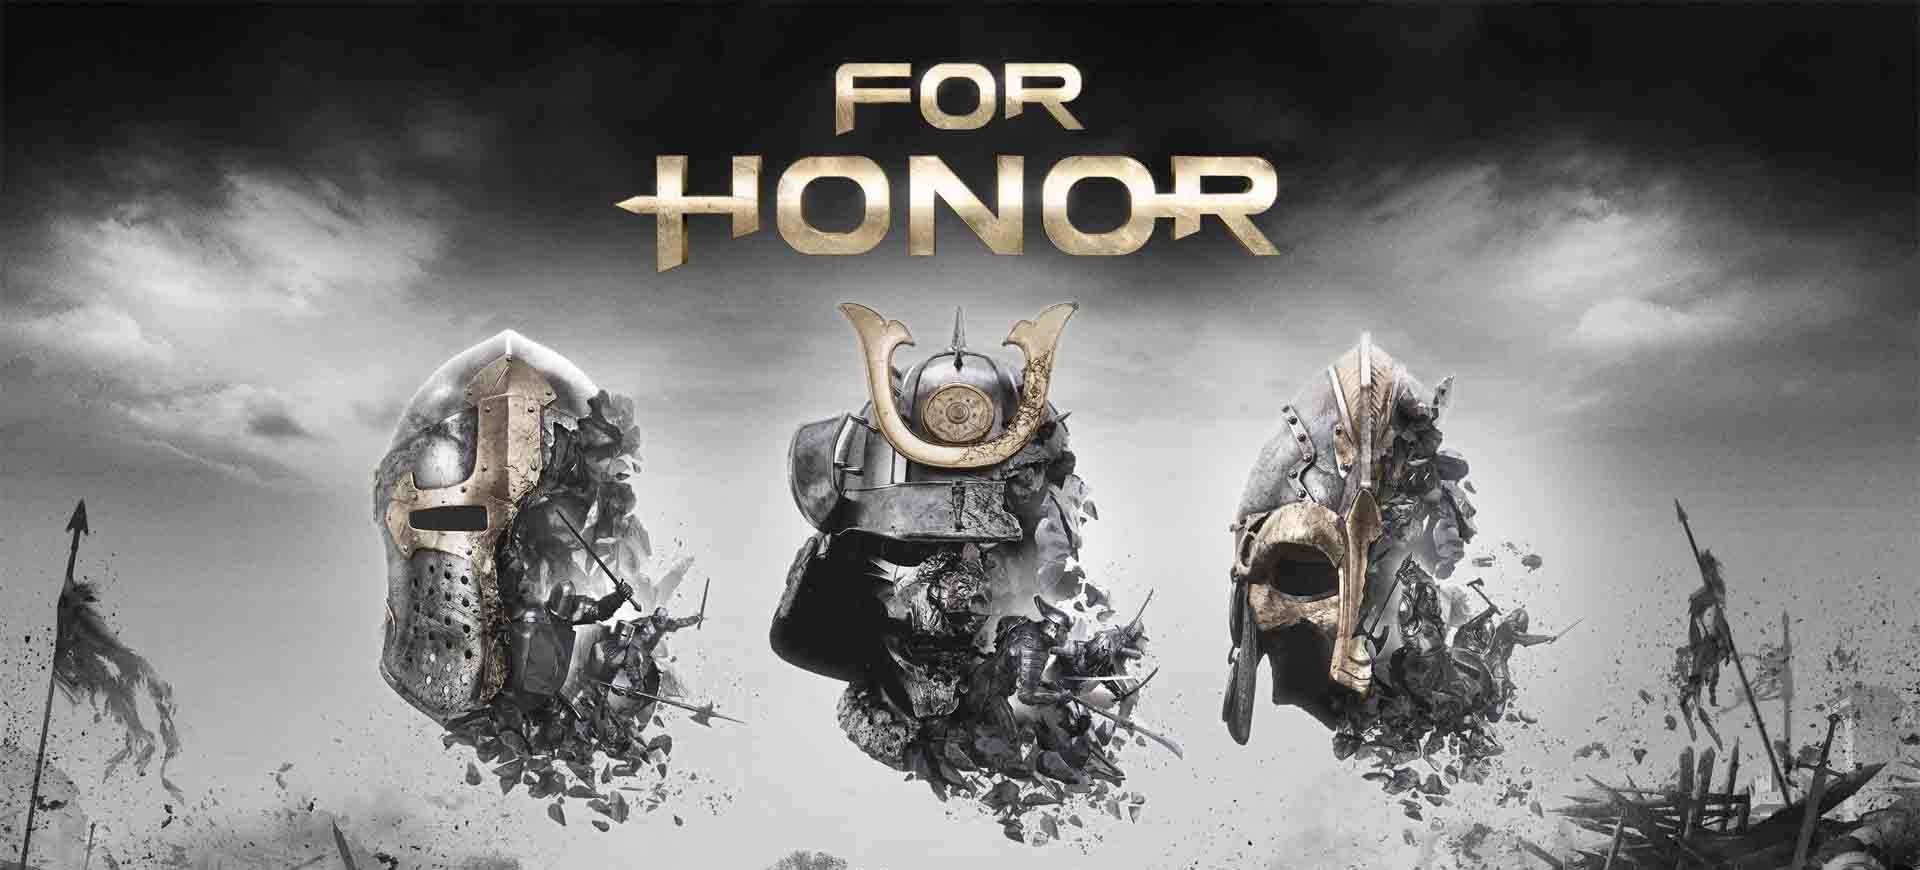 E3 2015: 3 điều cần biết về “For Honor”